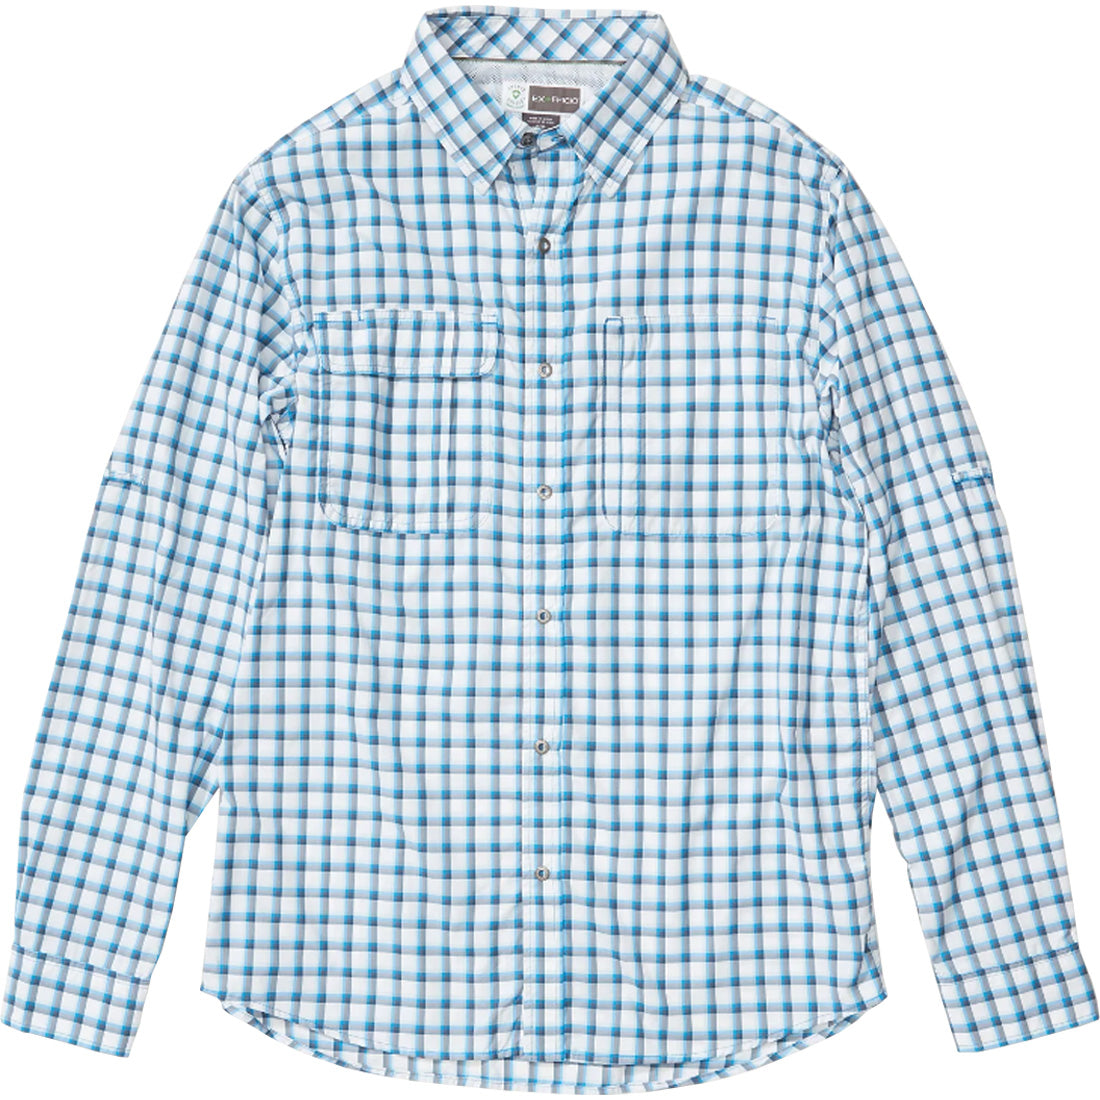 ExOfficio BugsAway Ashford Long Sleeve Shirt - Men's